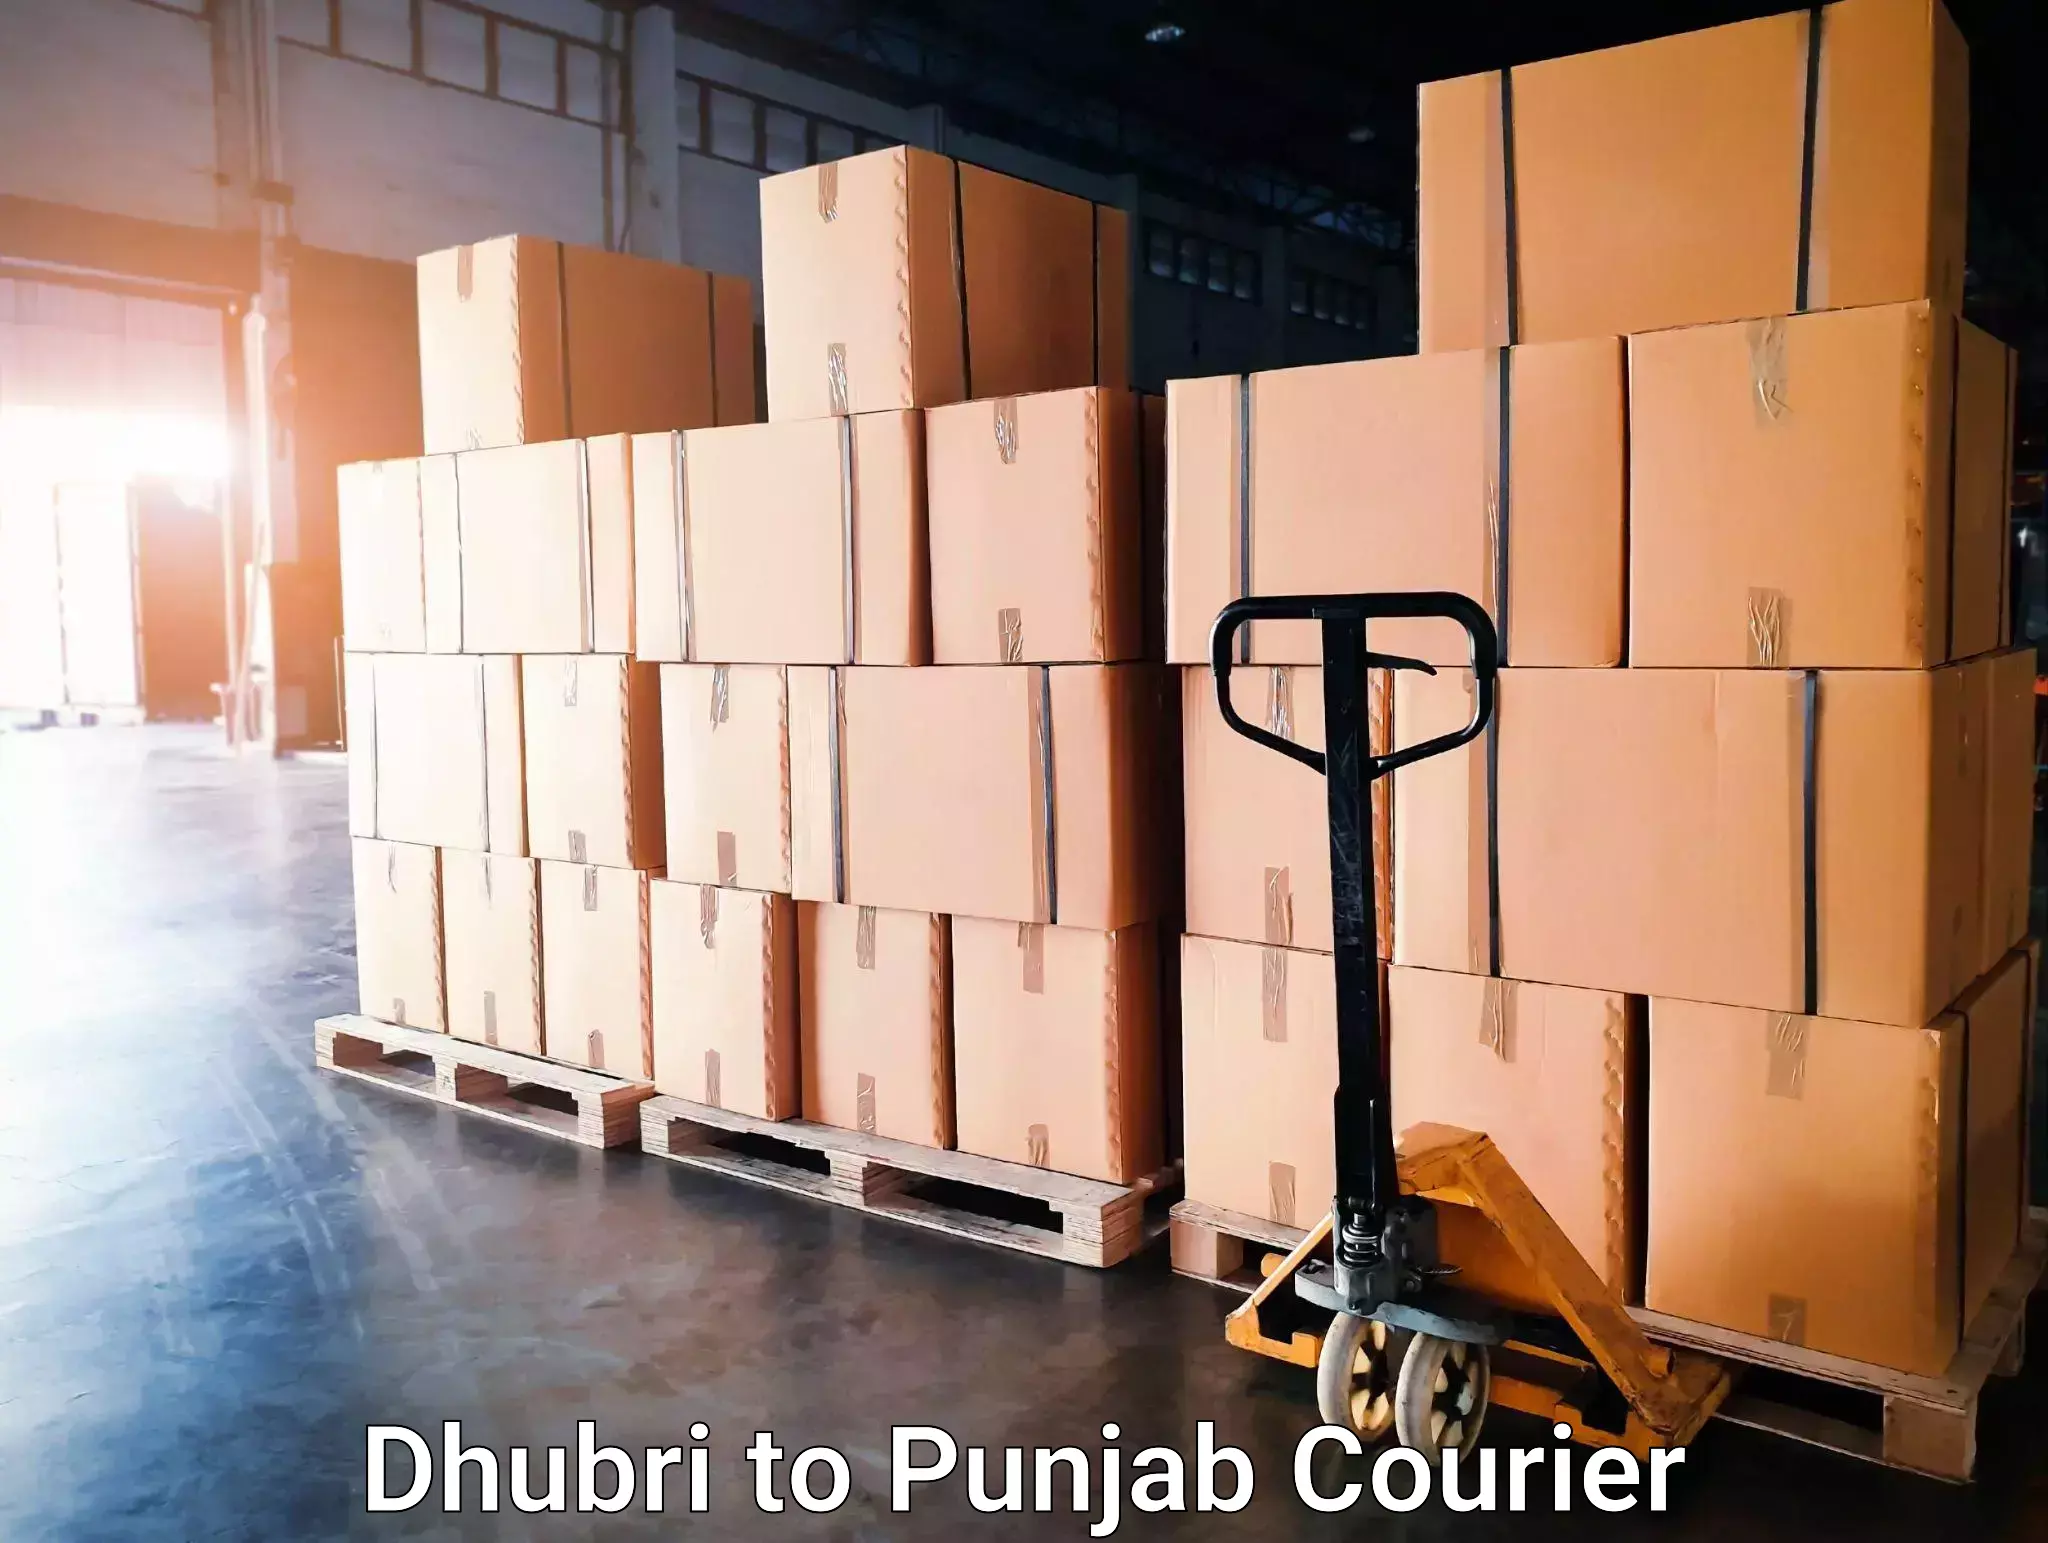 Express postal services Dhubri to Punjab